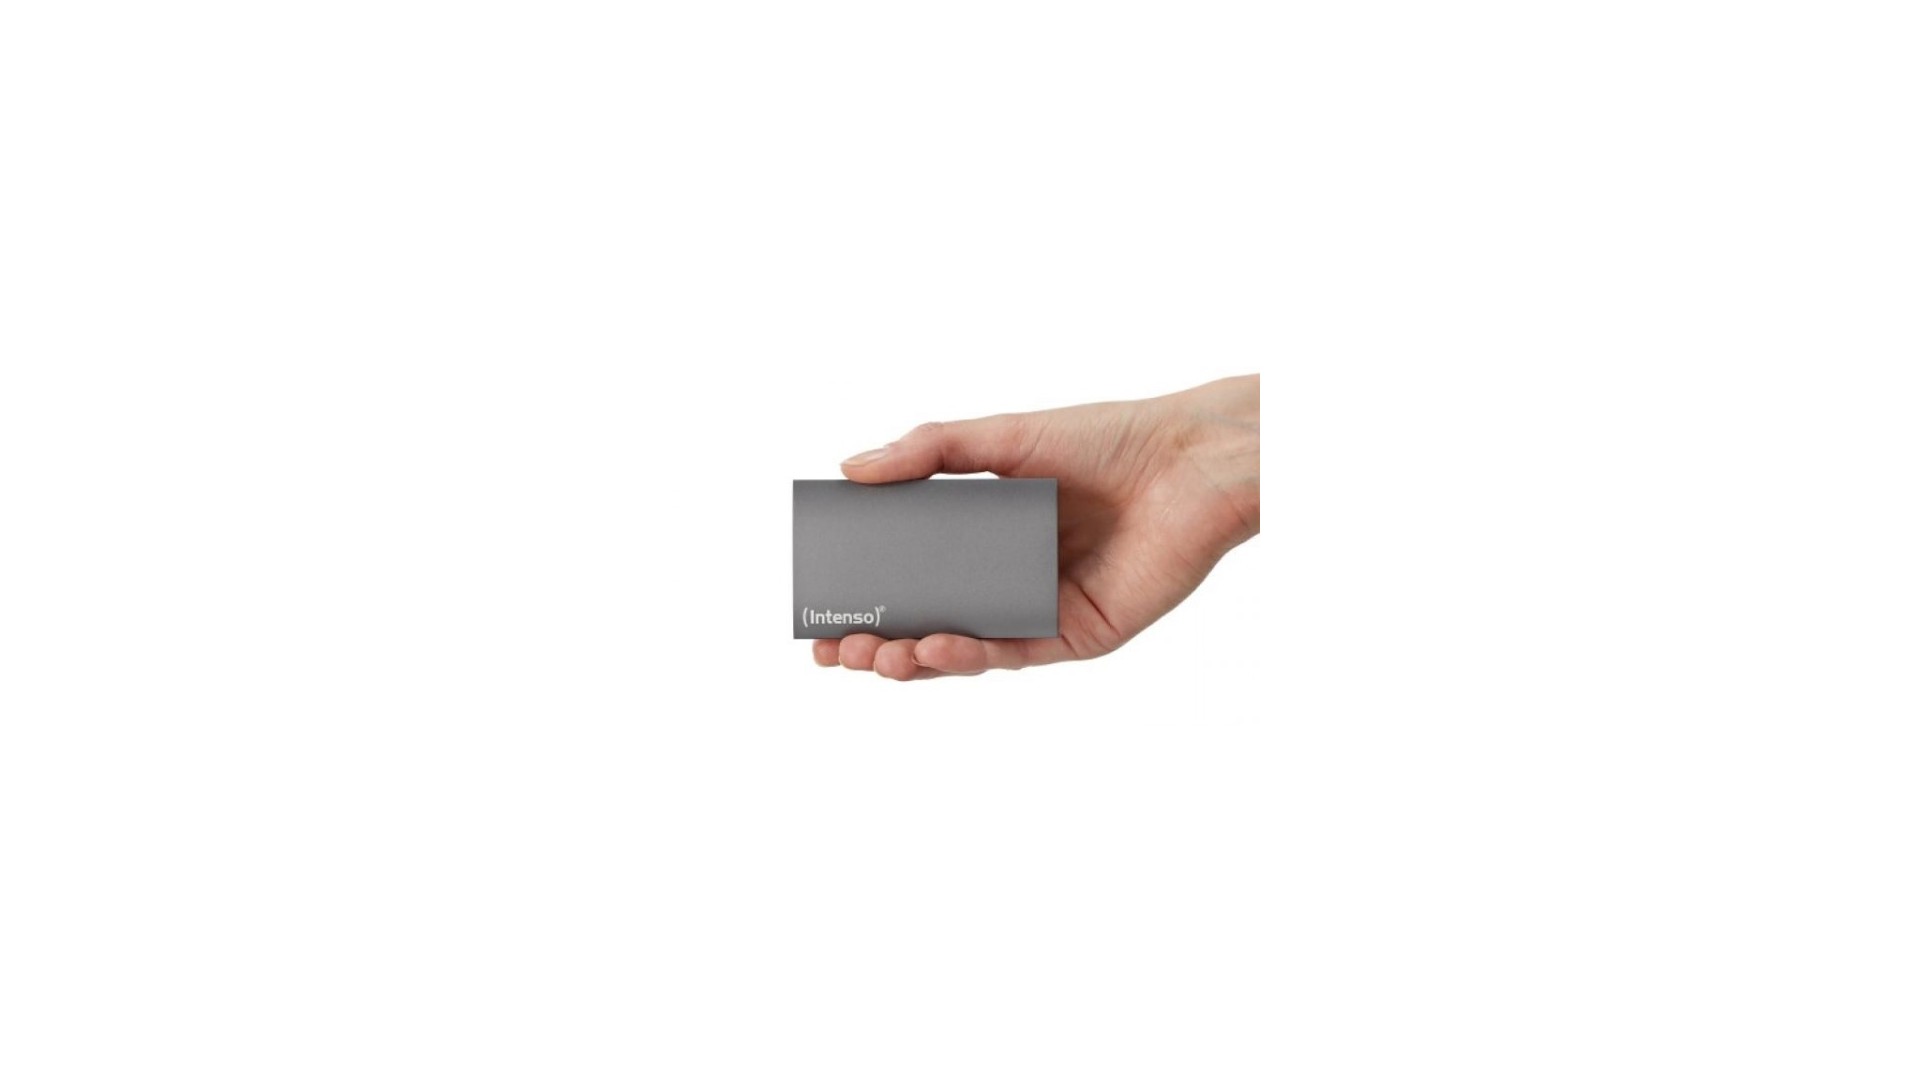 Integral - SSD Portable 240 Go Disque Dur Externe Flash USB 3.0 - SSD  Externe - Rue du Commerce